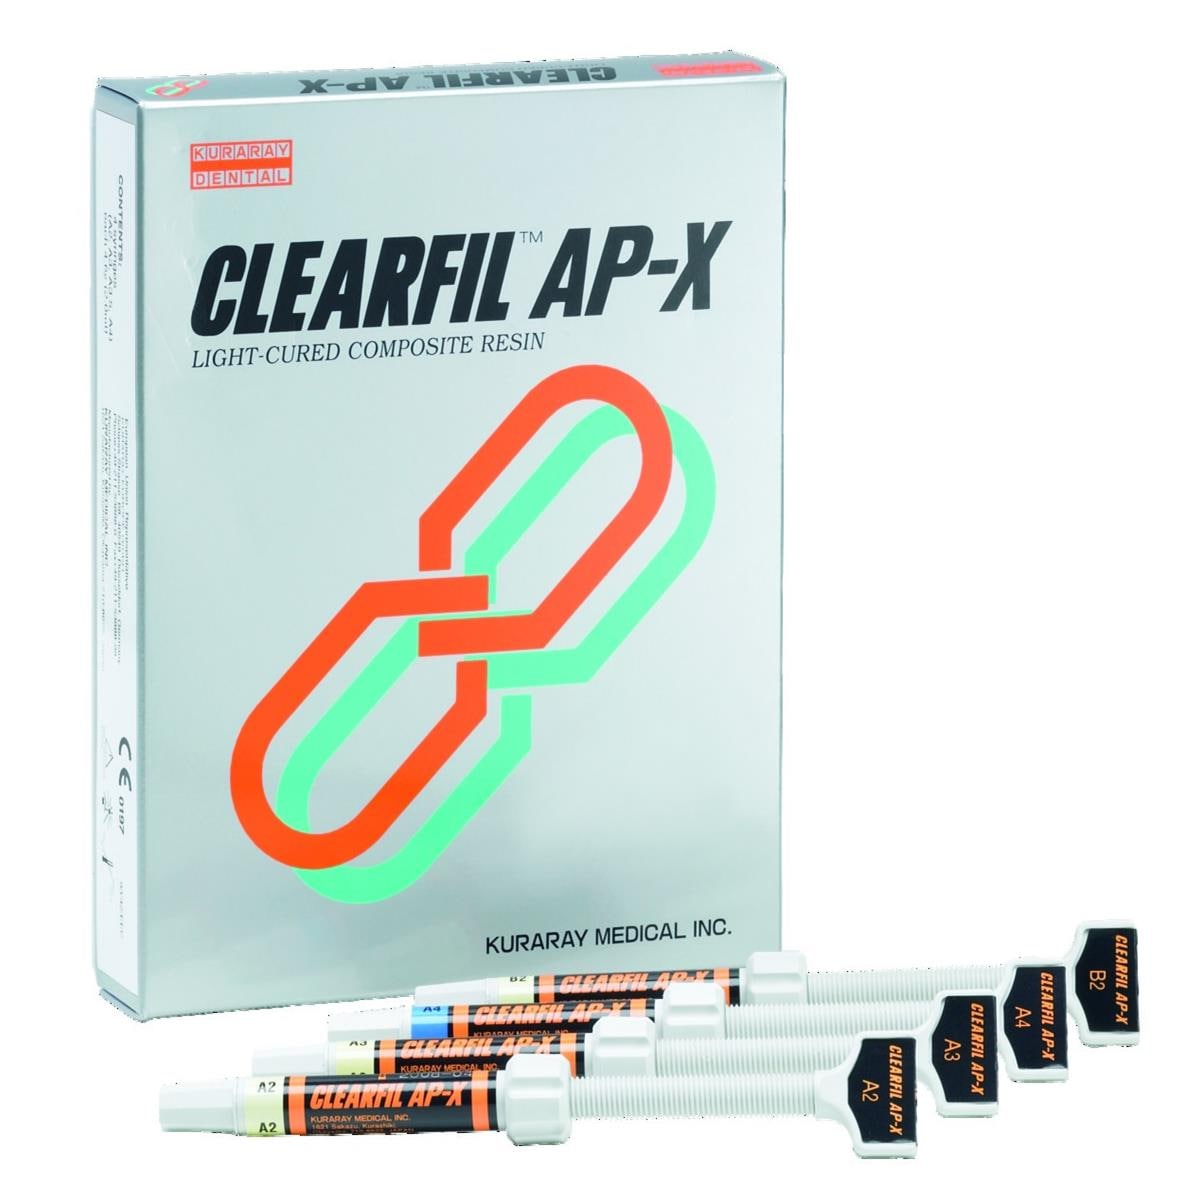 Clearfil AP-X KURARAY - A2 - Seringue de 4,6g